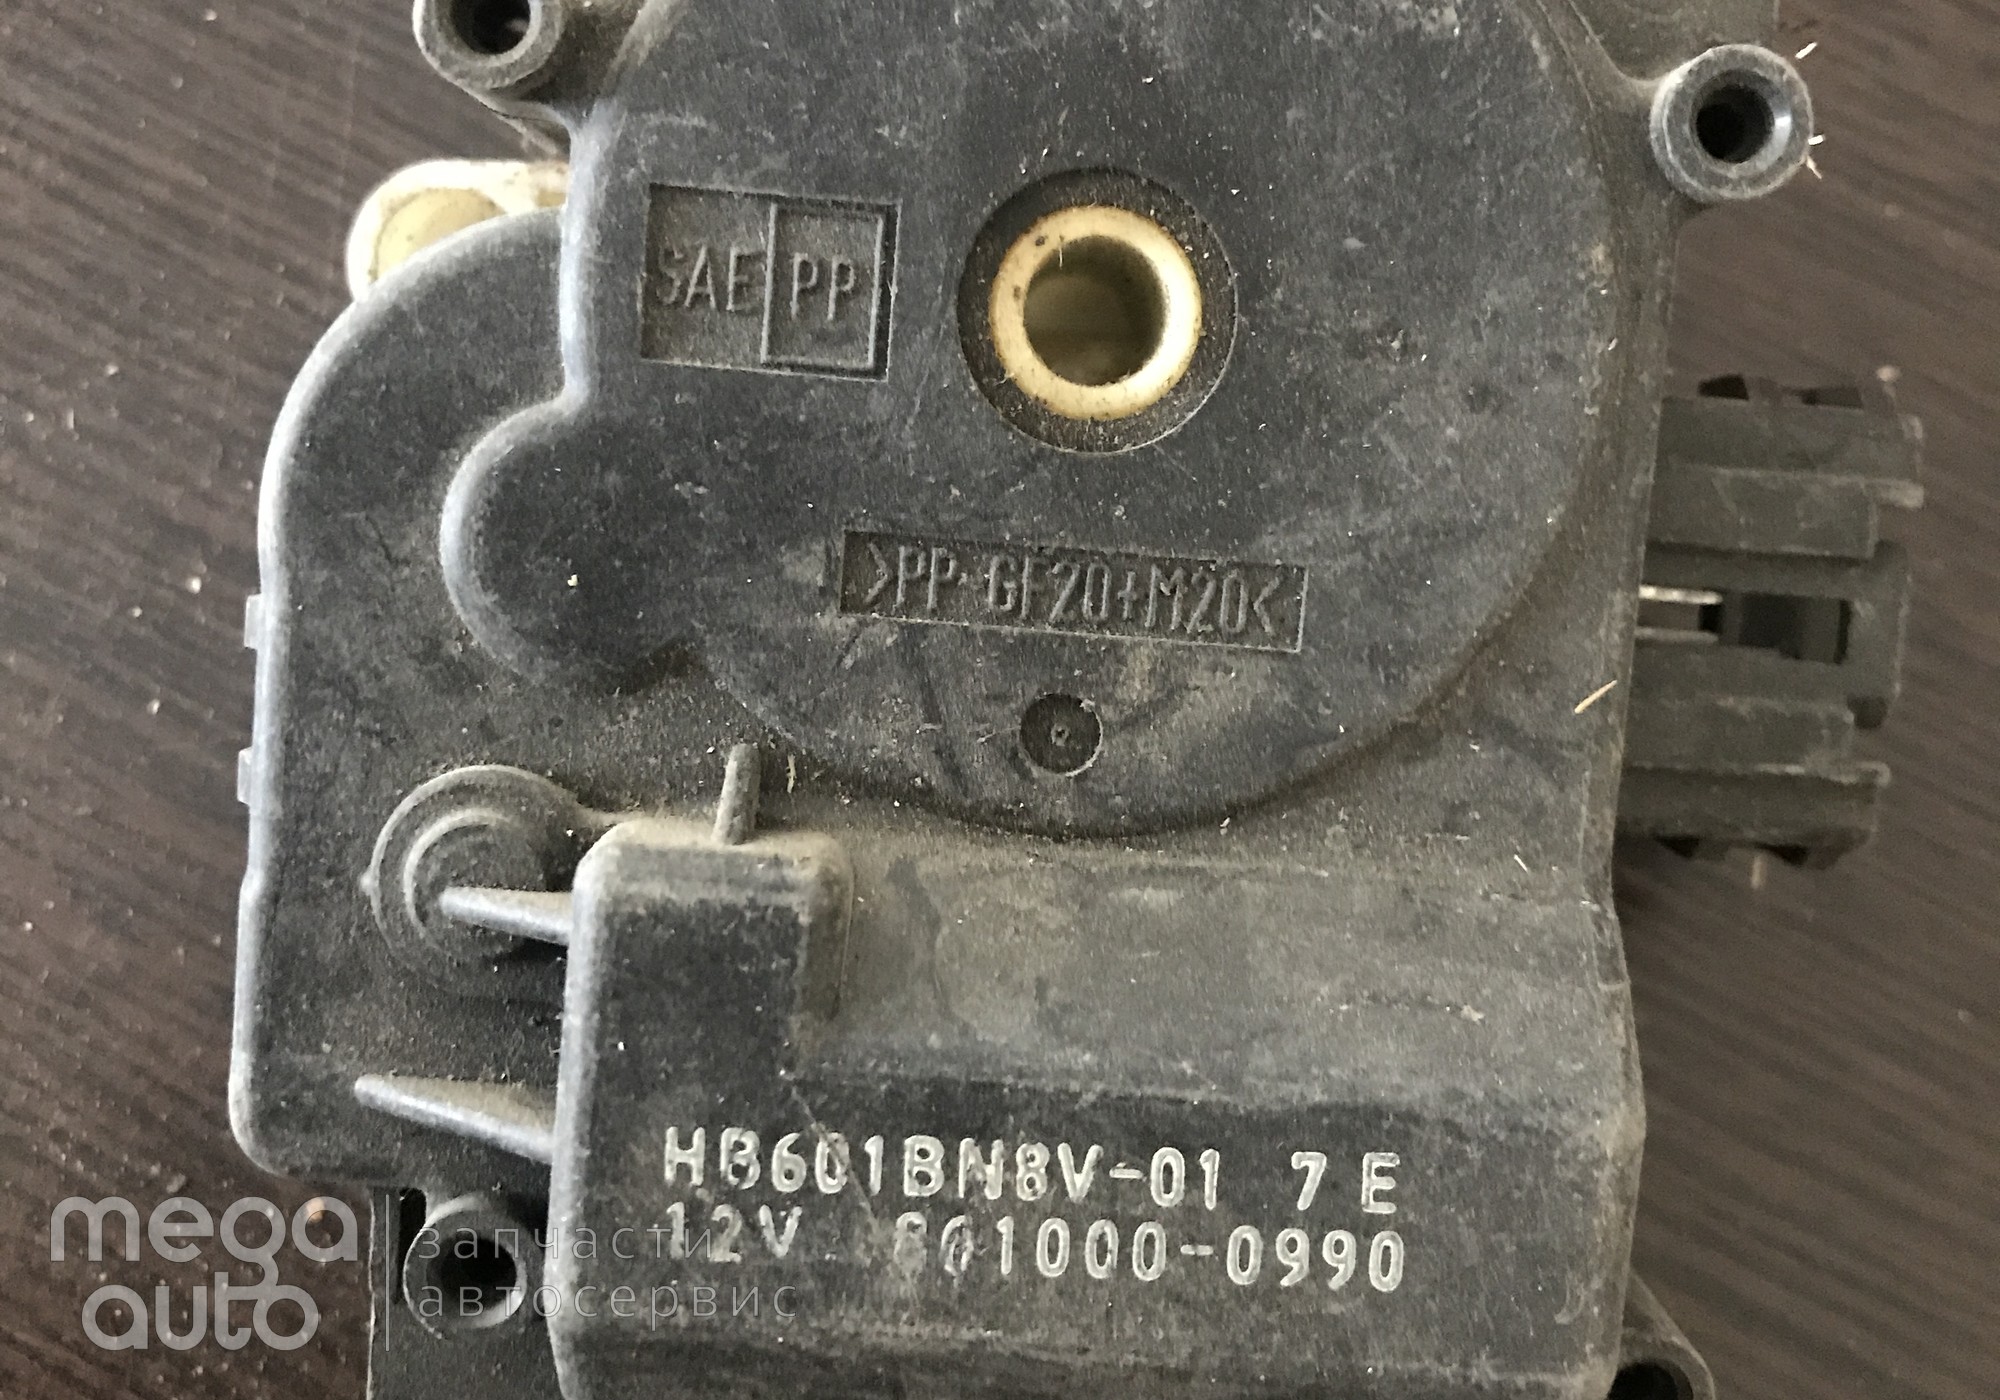 8610000990 Моторчик отопителя мазда 3, мазда 5 для Mazda